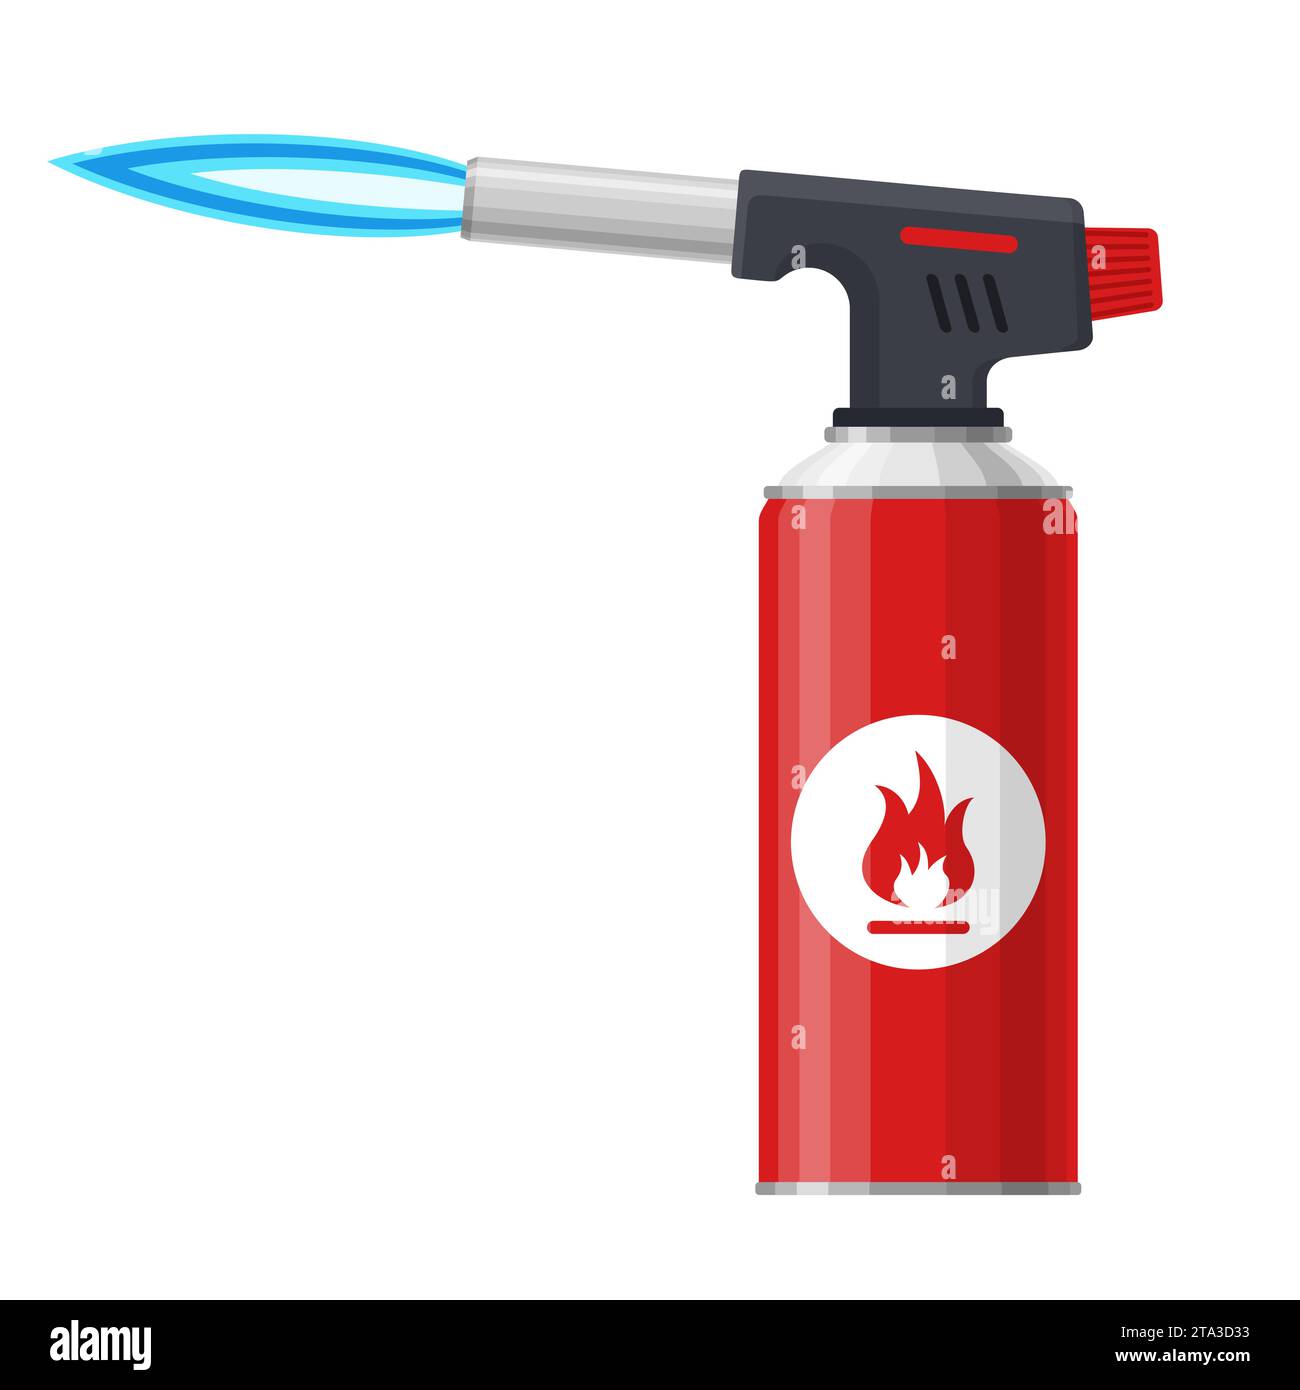 Torcia a flusso con fiamma blu isolata su sfondo bianco. Bruciatore manuale per cannello a gas, icona utensile per fiamma di saldatura. Illustrazione vettoriale. Illustrazione Vettoriale